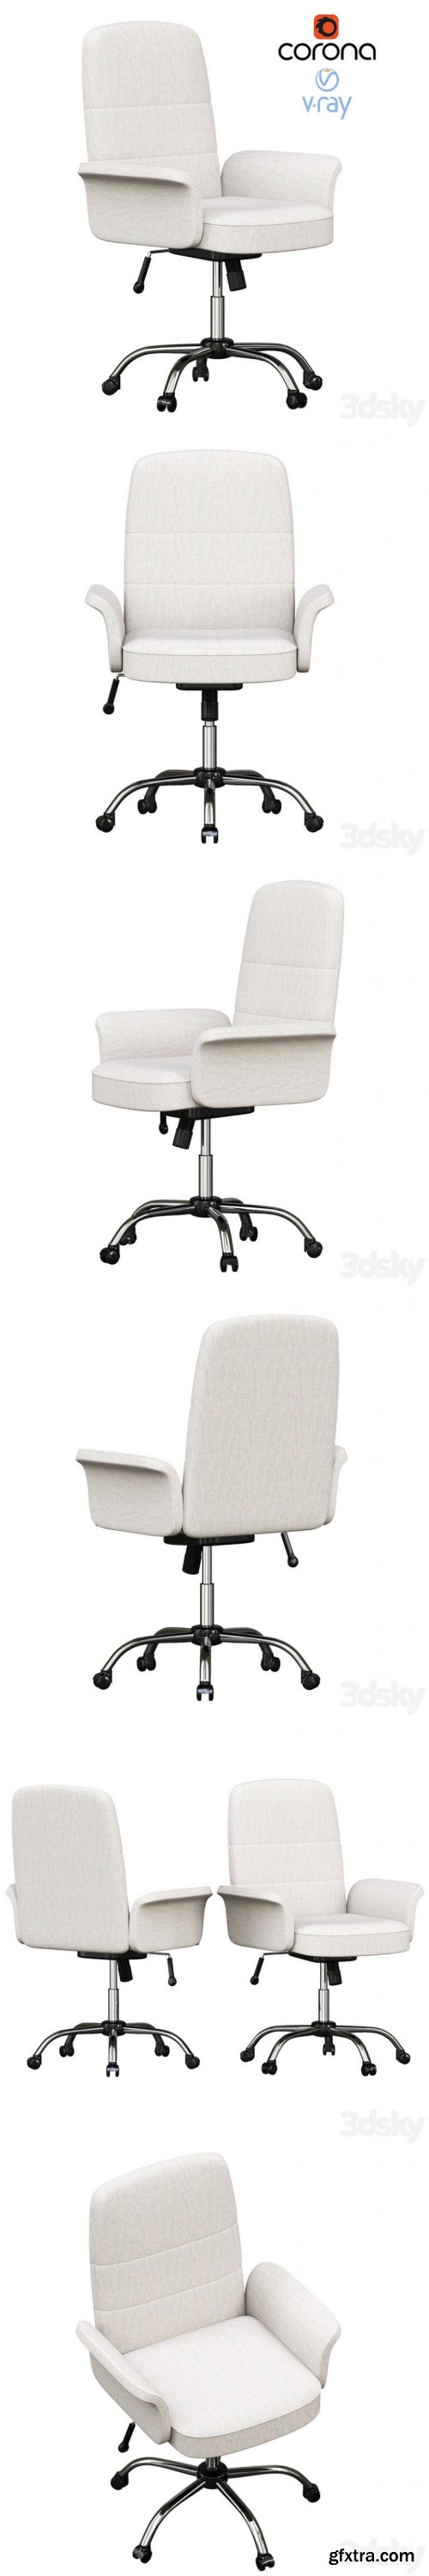 Artiss Fabric Office Chair